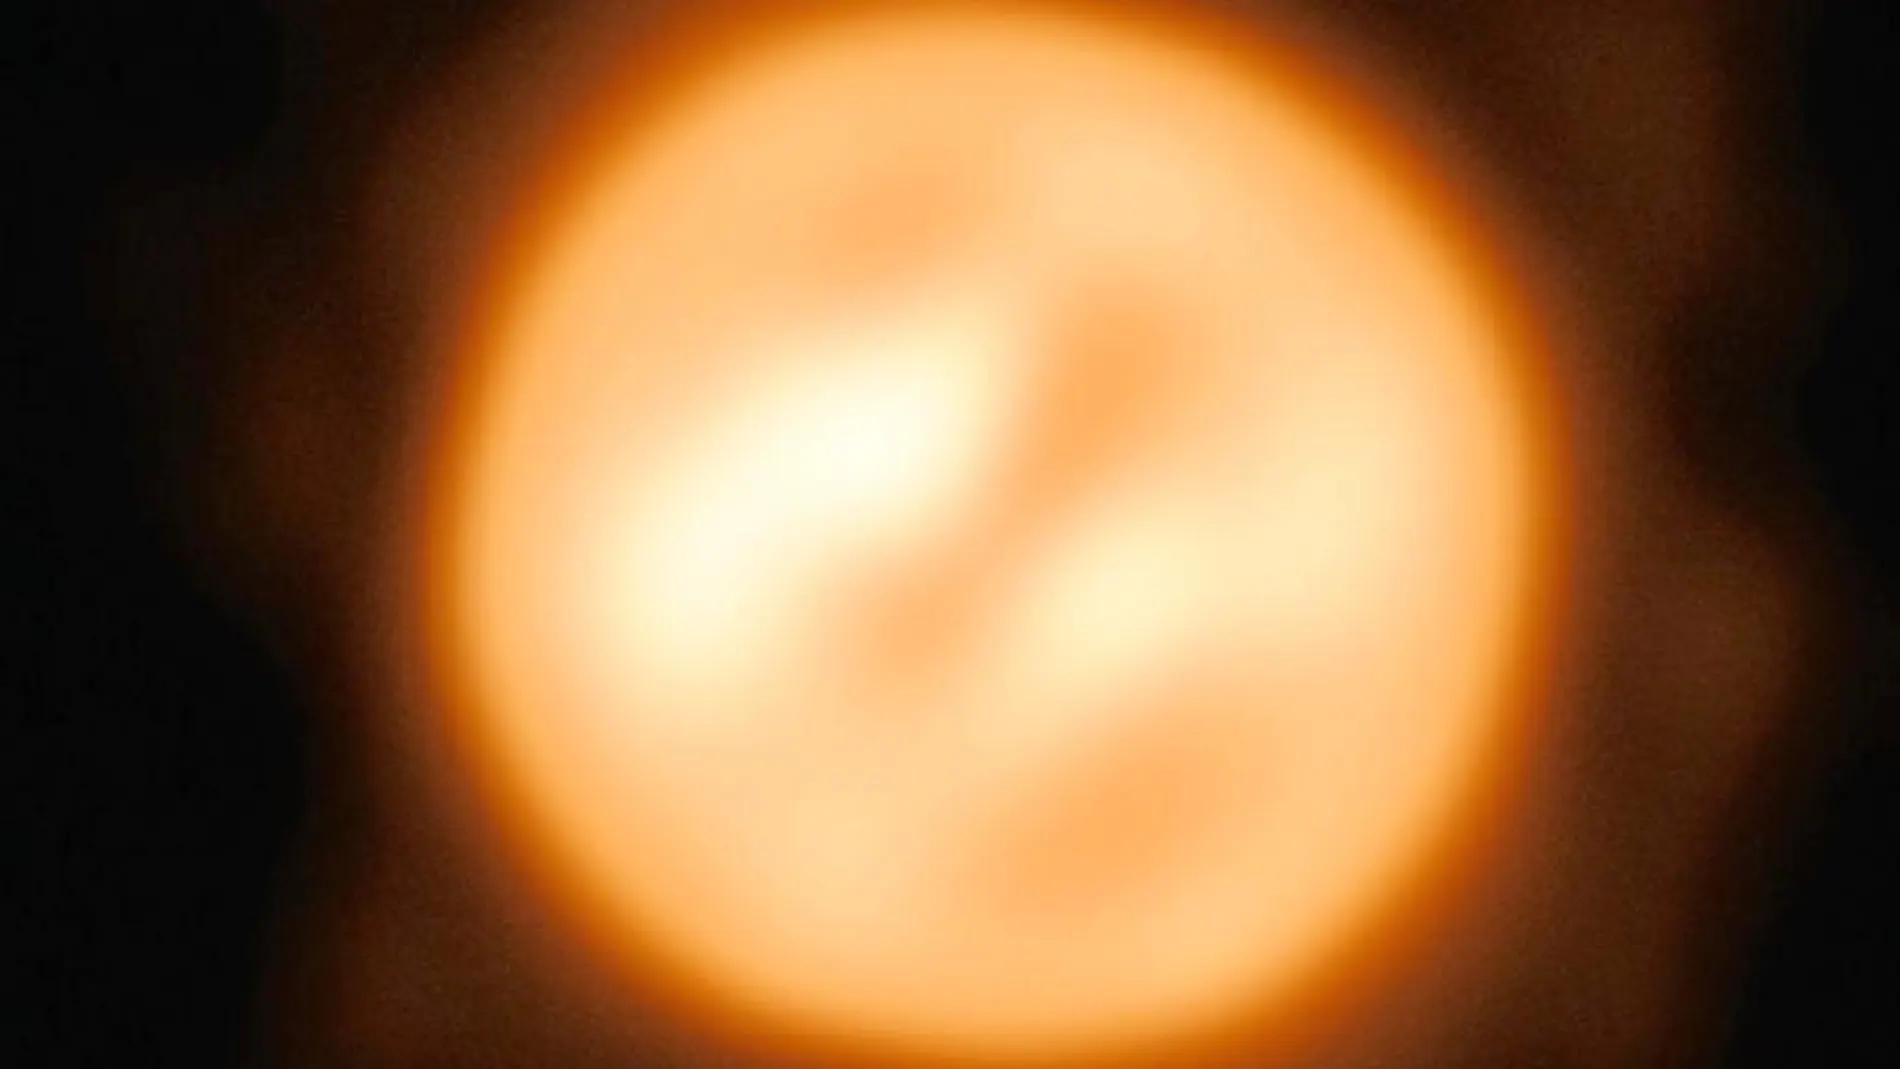 Usando el Very Large Telescope, los astrónomos han construido esta notable imagen de la estrella roja Antares